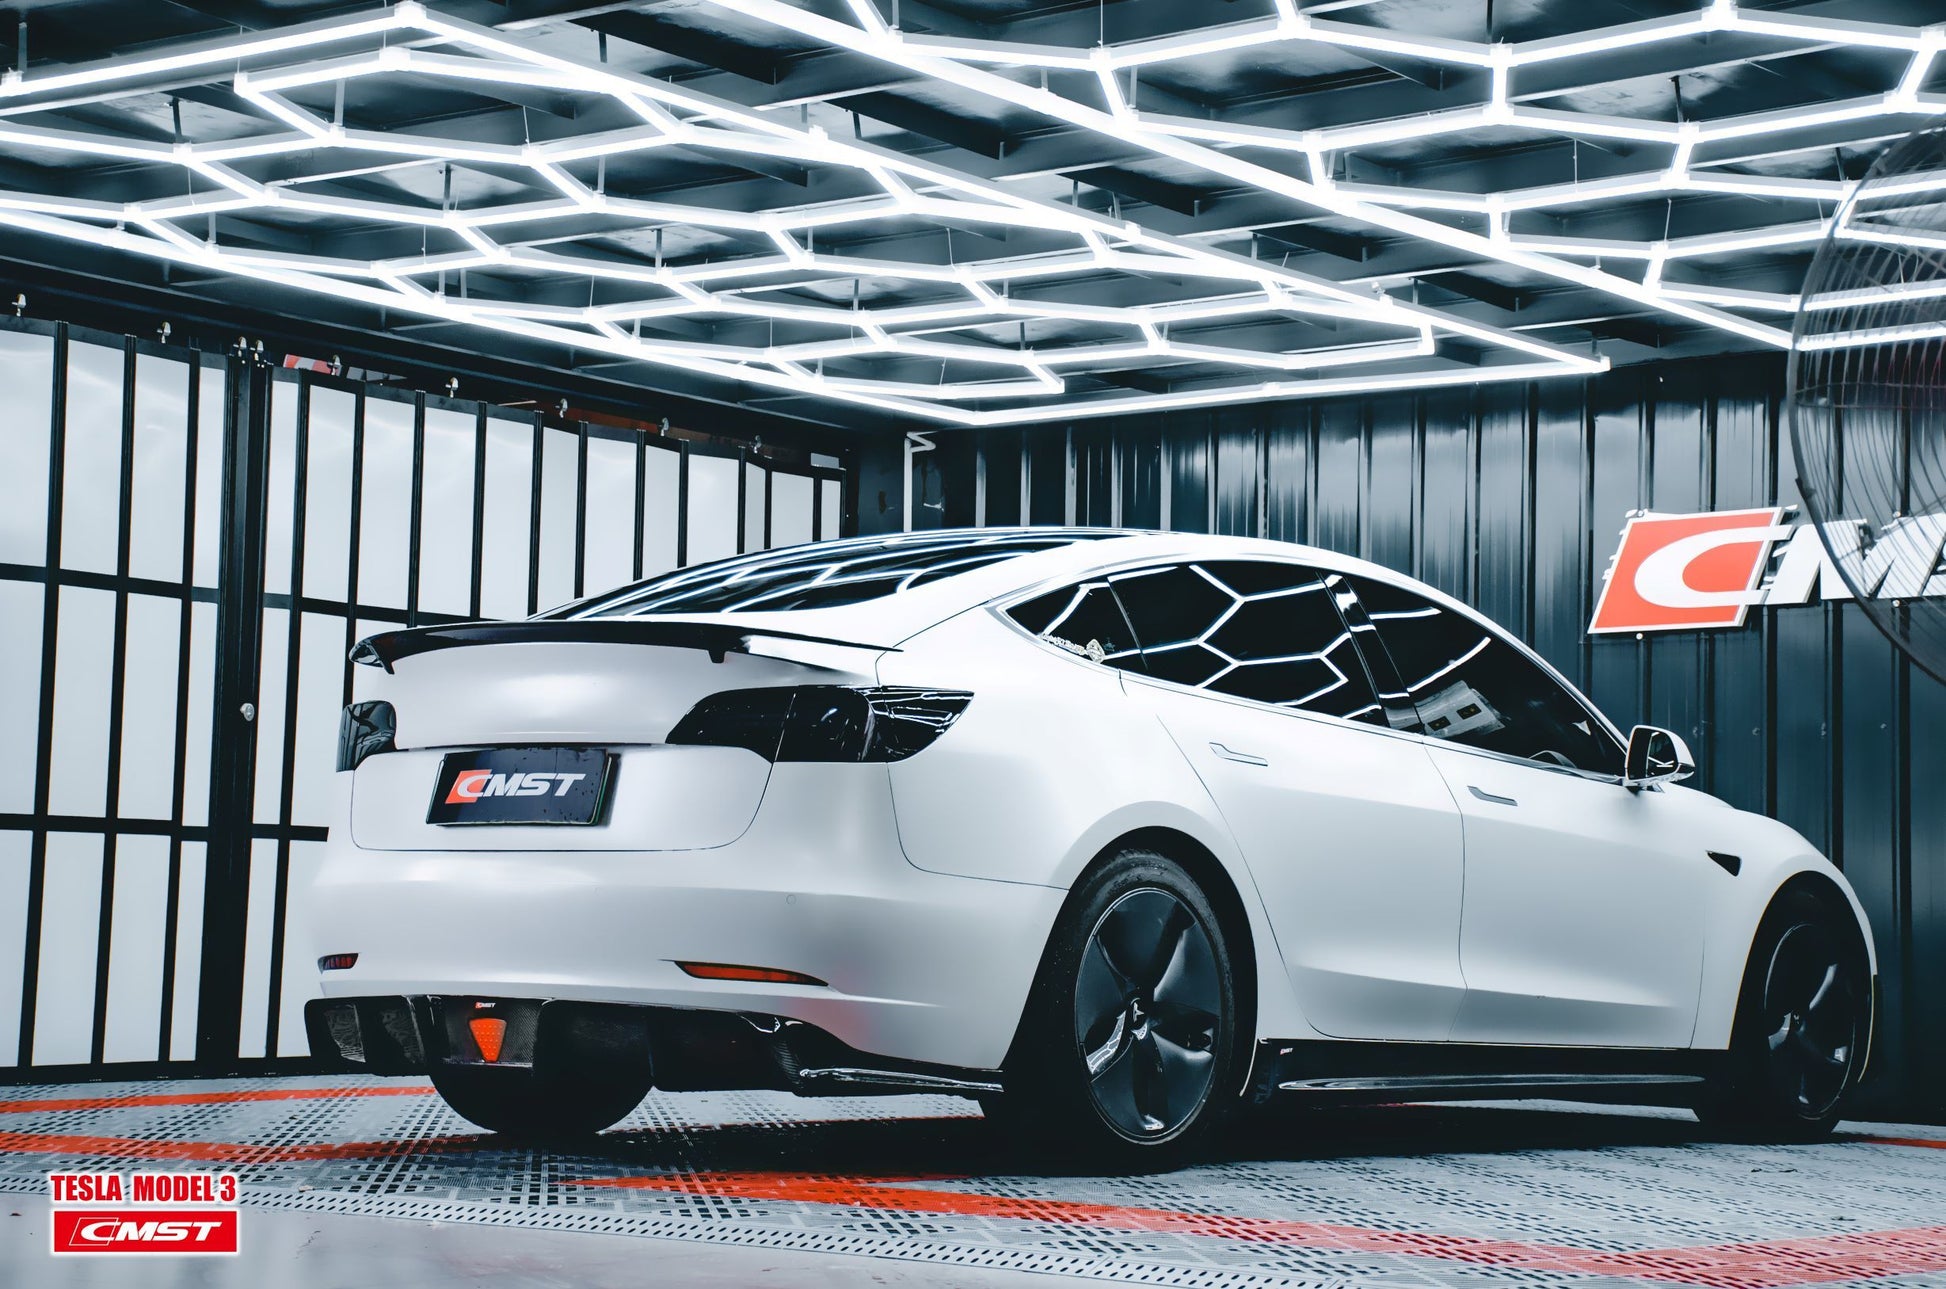 TESERY×CMST Tesla Model 3 Carbon Fiber Rear Diffuser Ver.3 - Tesery Official Store